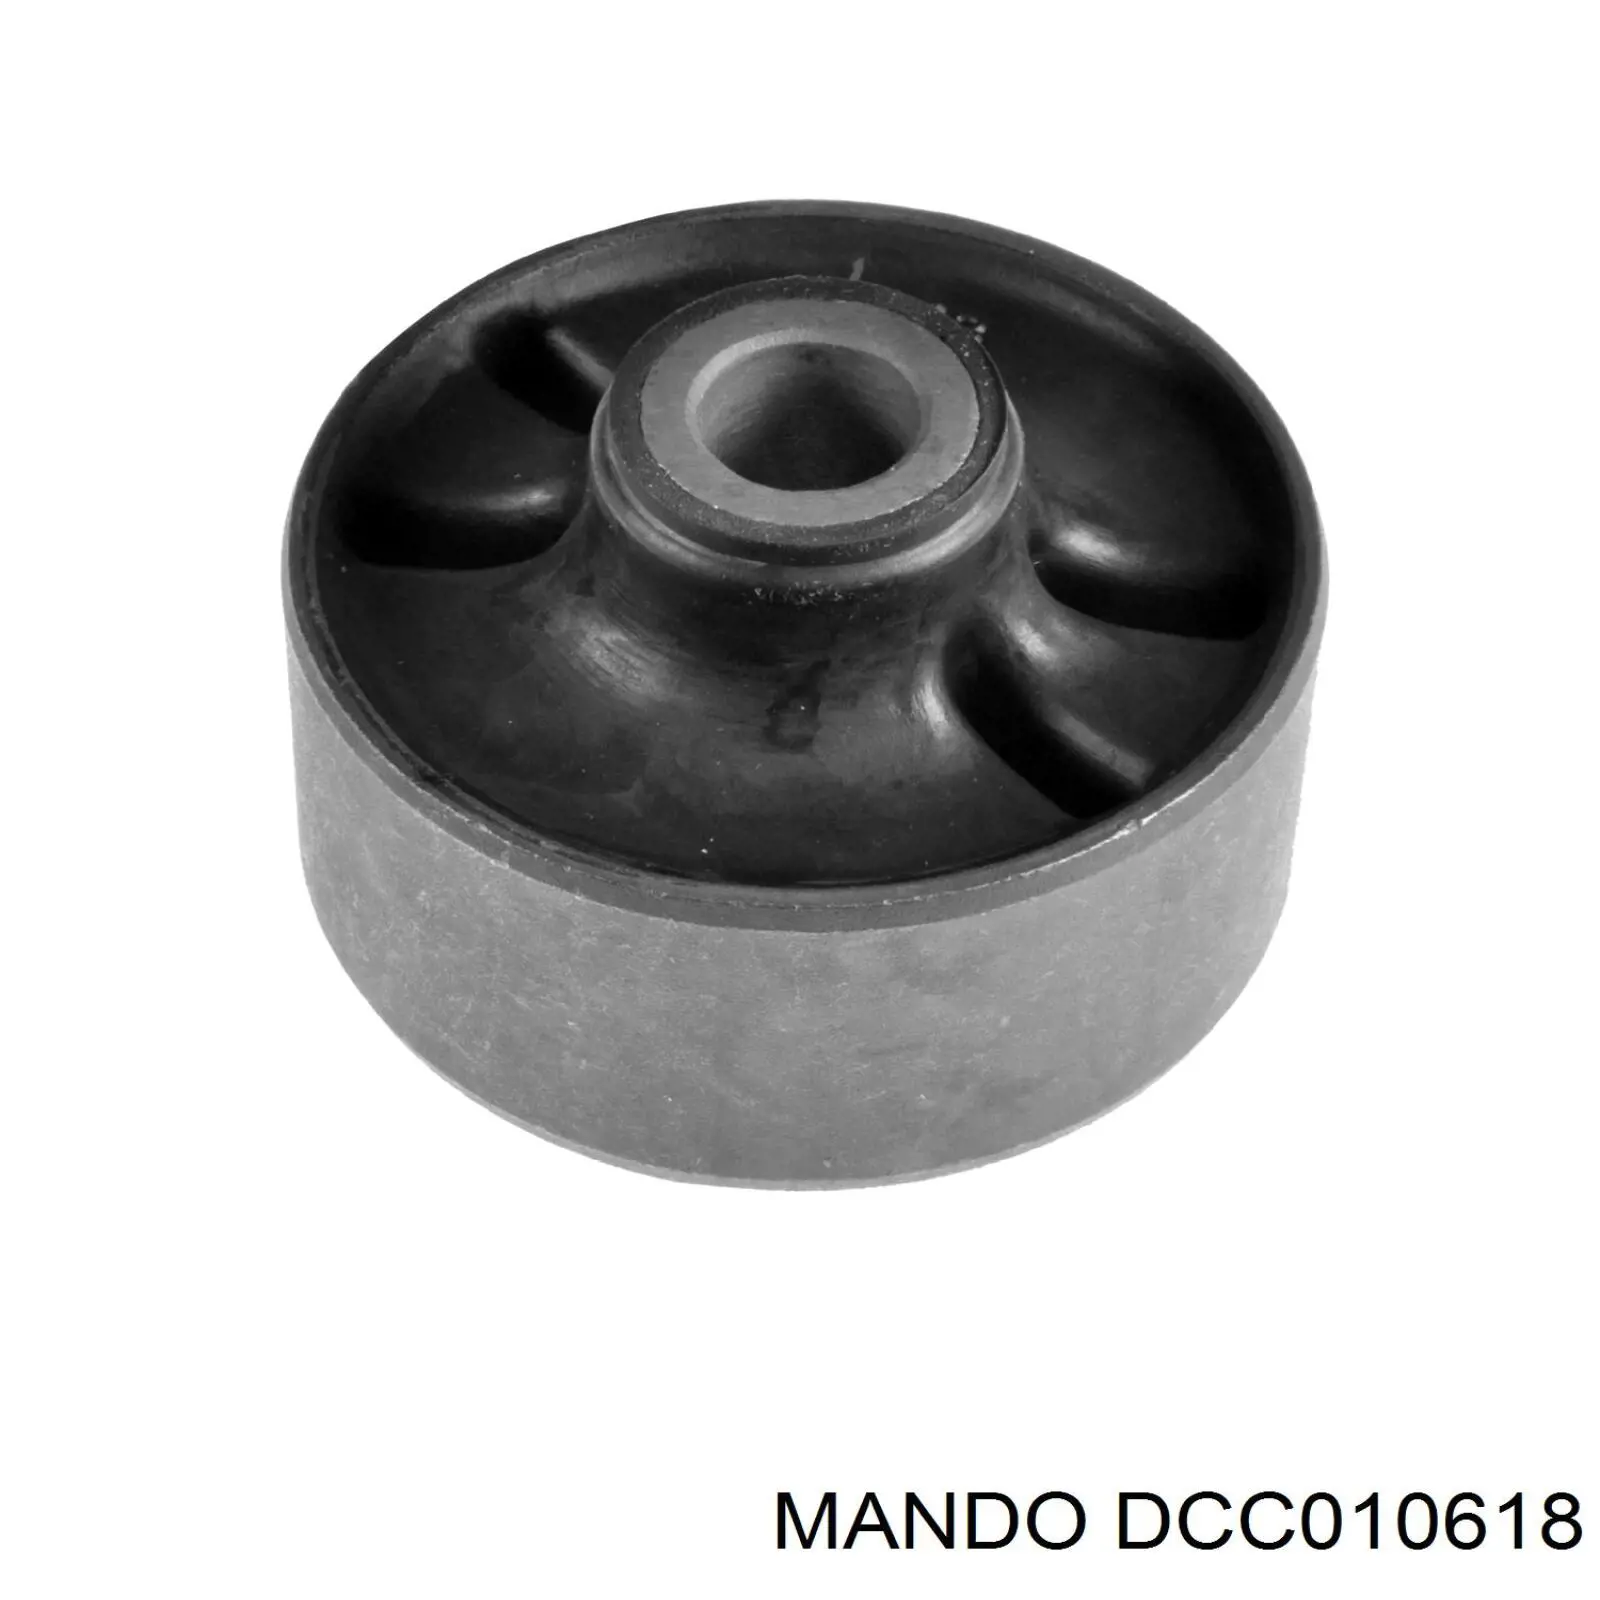 DCC010618 Mando сайлентблок переднего нижнего рычага